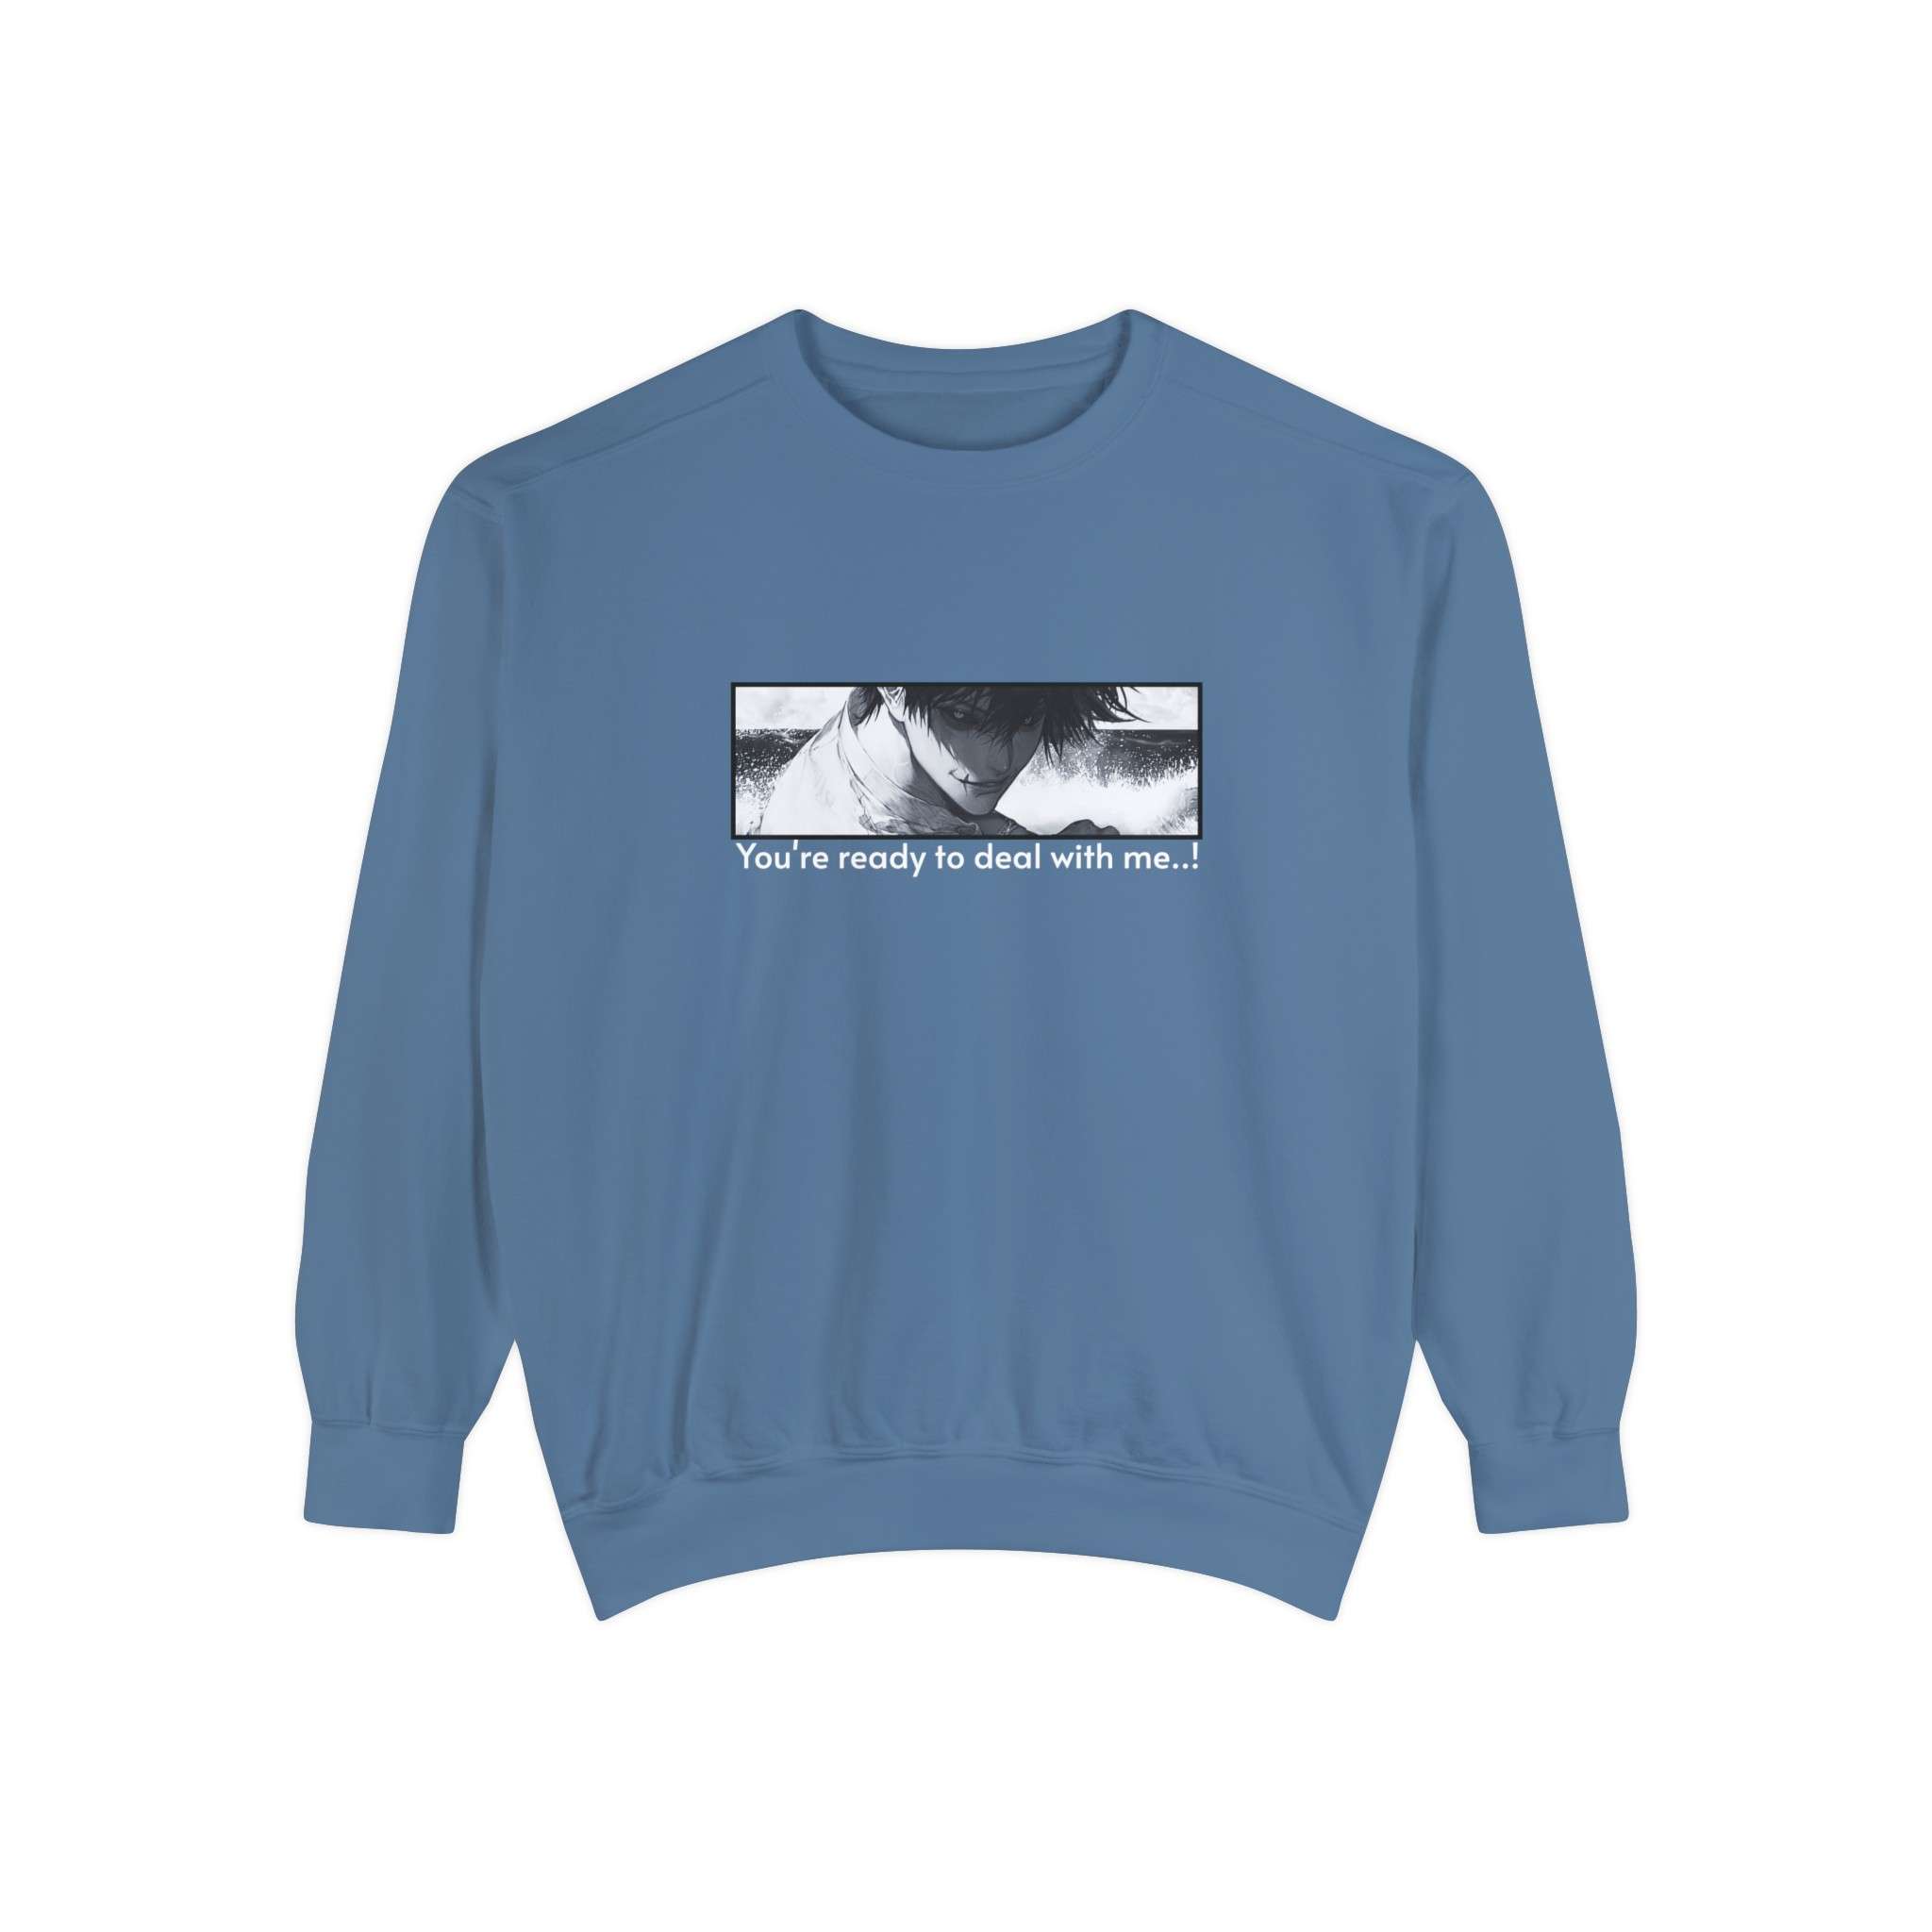 The Tojo Fushiguro Signature Unisex Garment-Dyed Sweatshirt